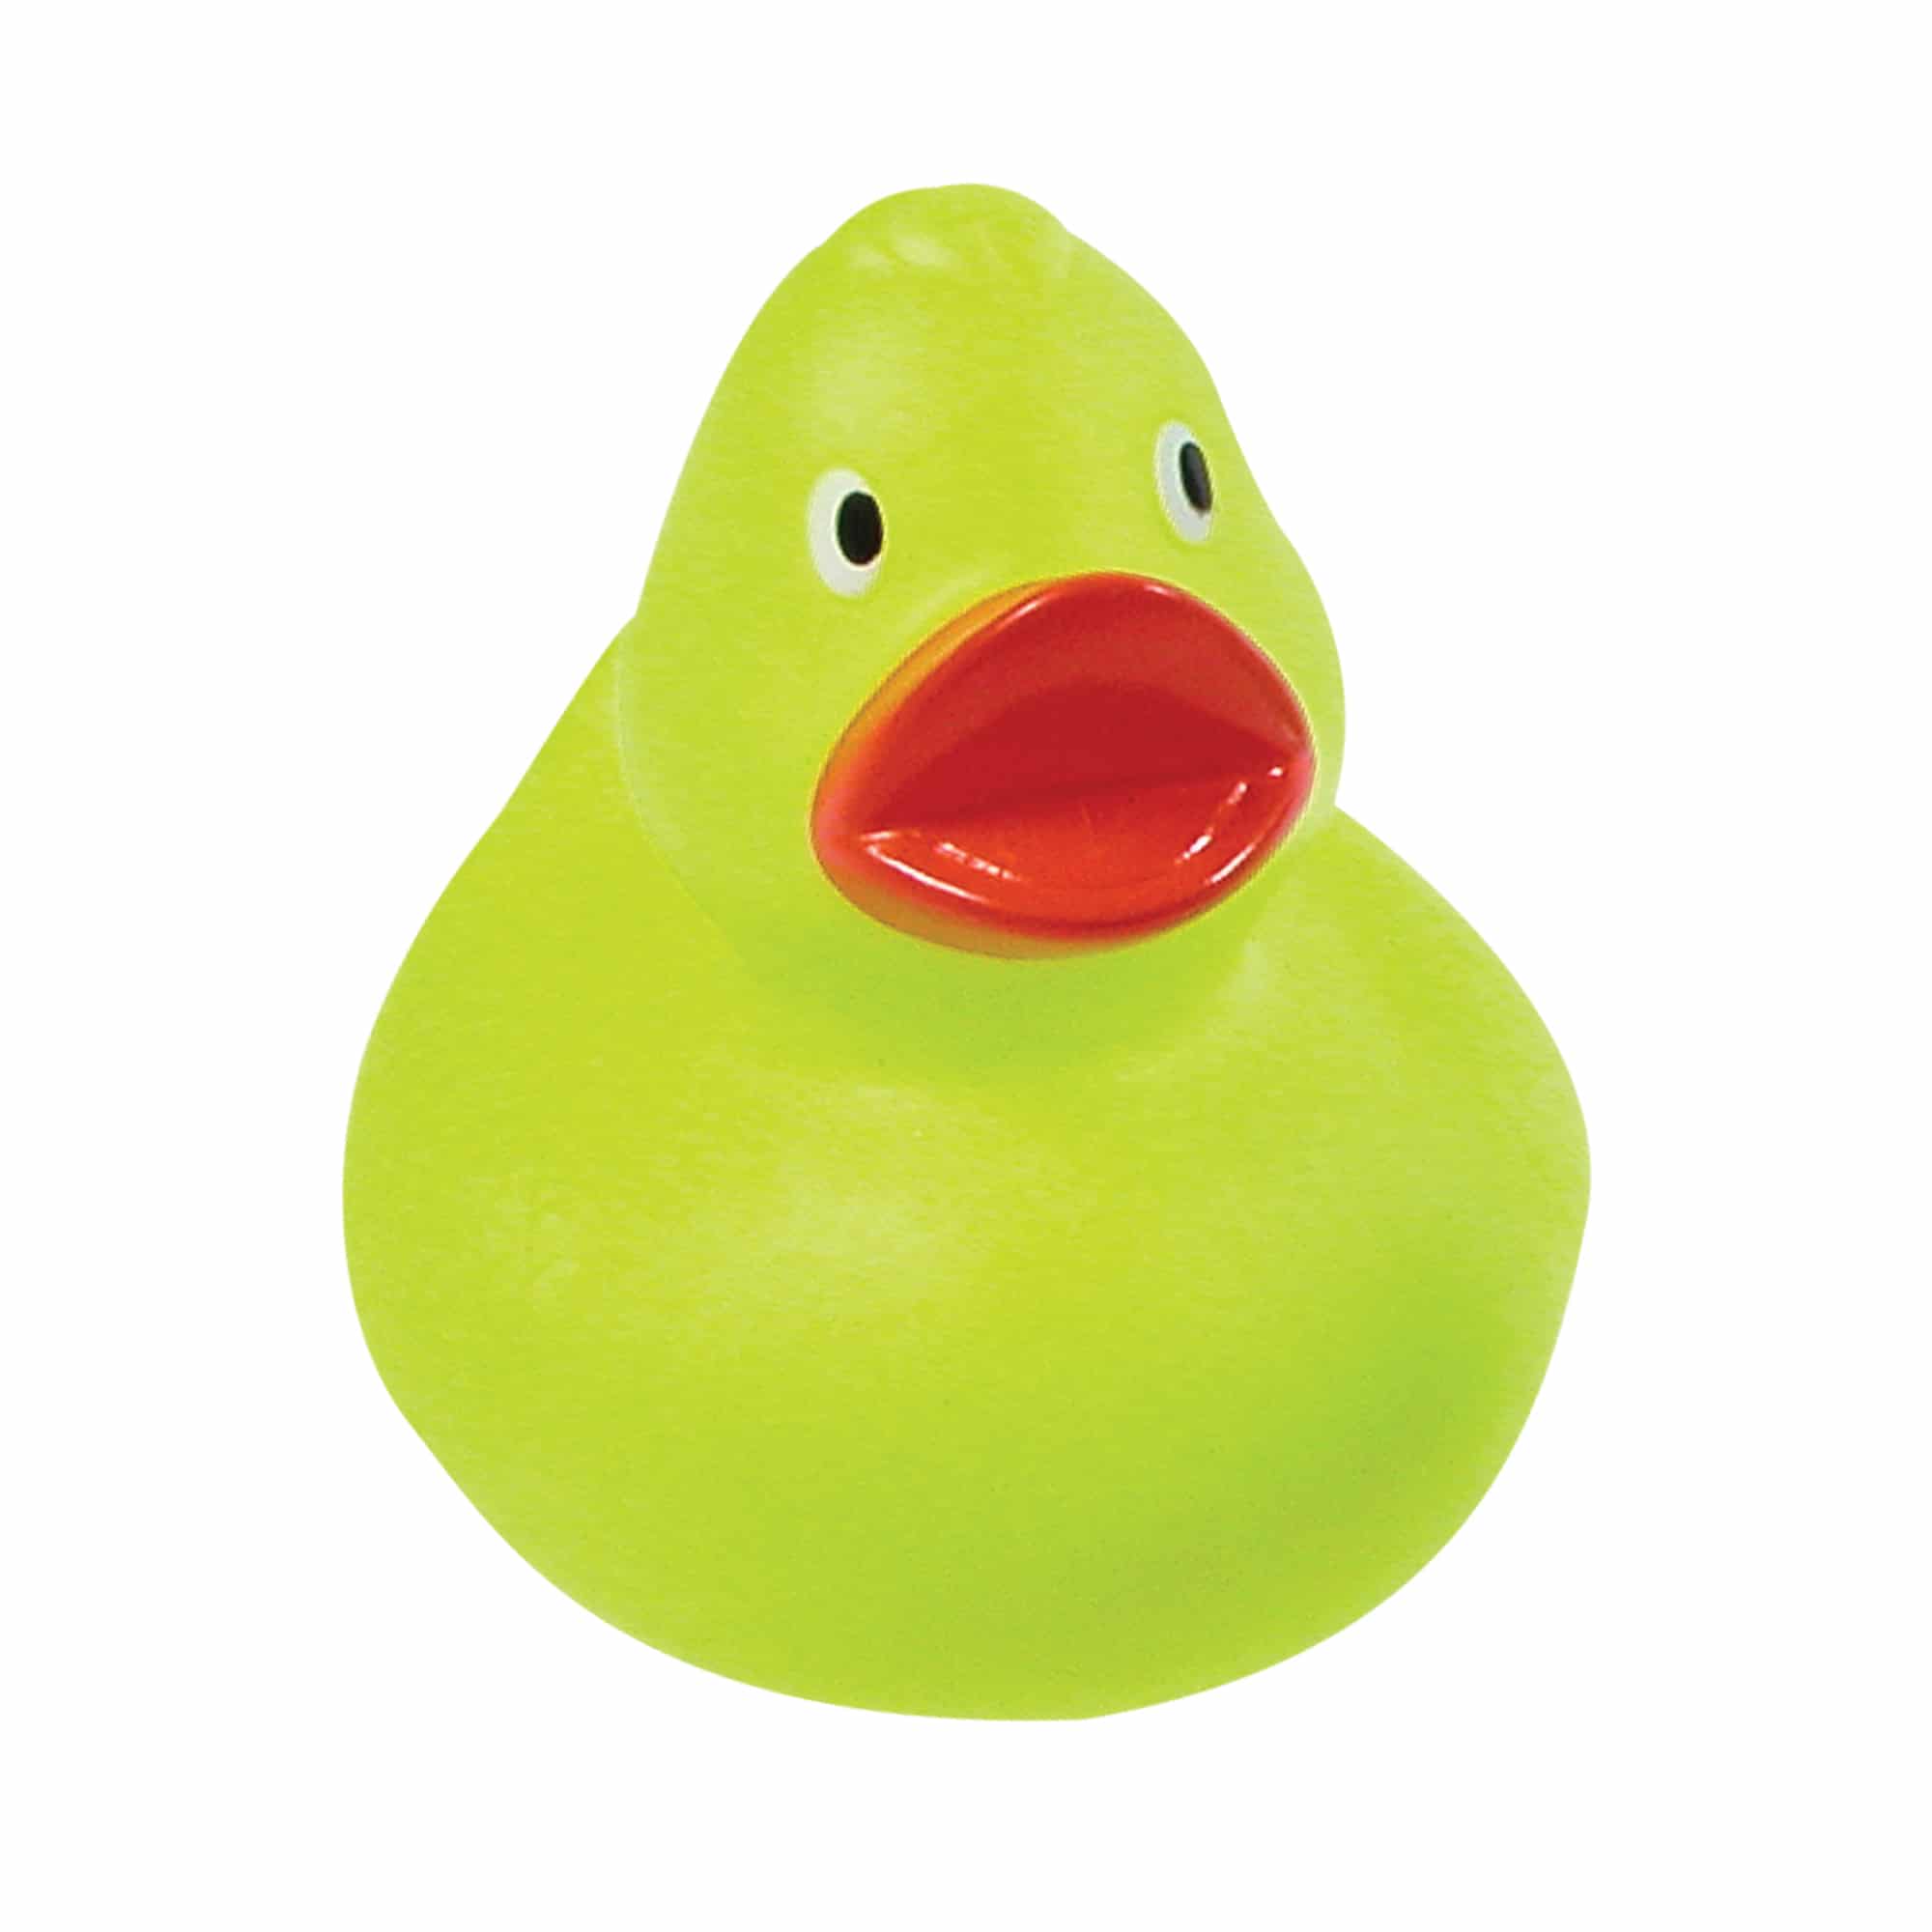  Rubber Duck - Medium C107928-M